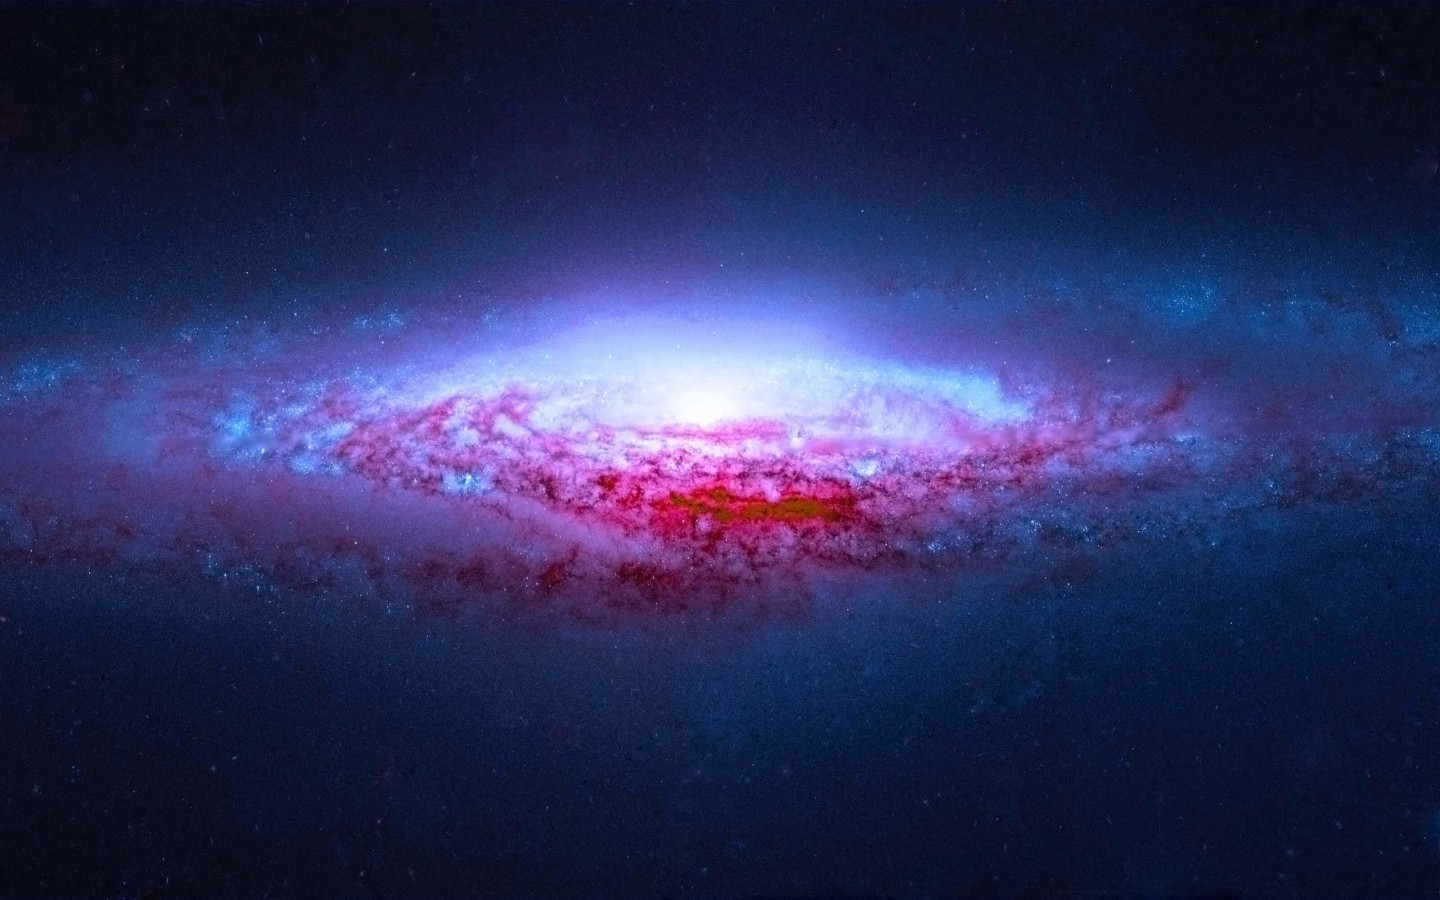 NGC 2683 Spiral Galaxy Wallpaper for Desktop 1440x900